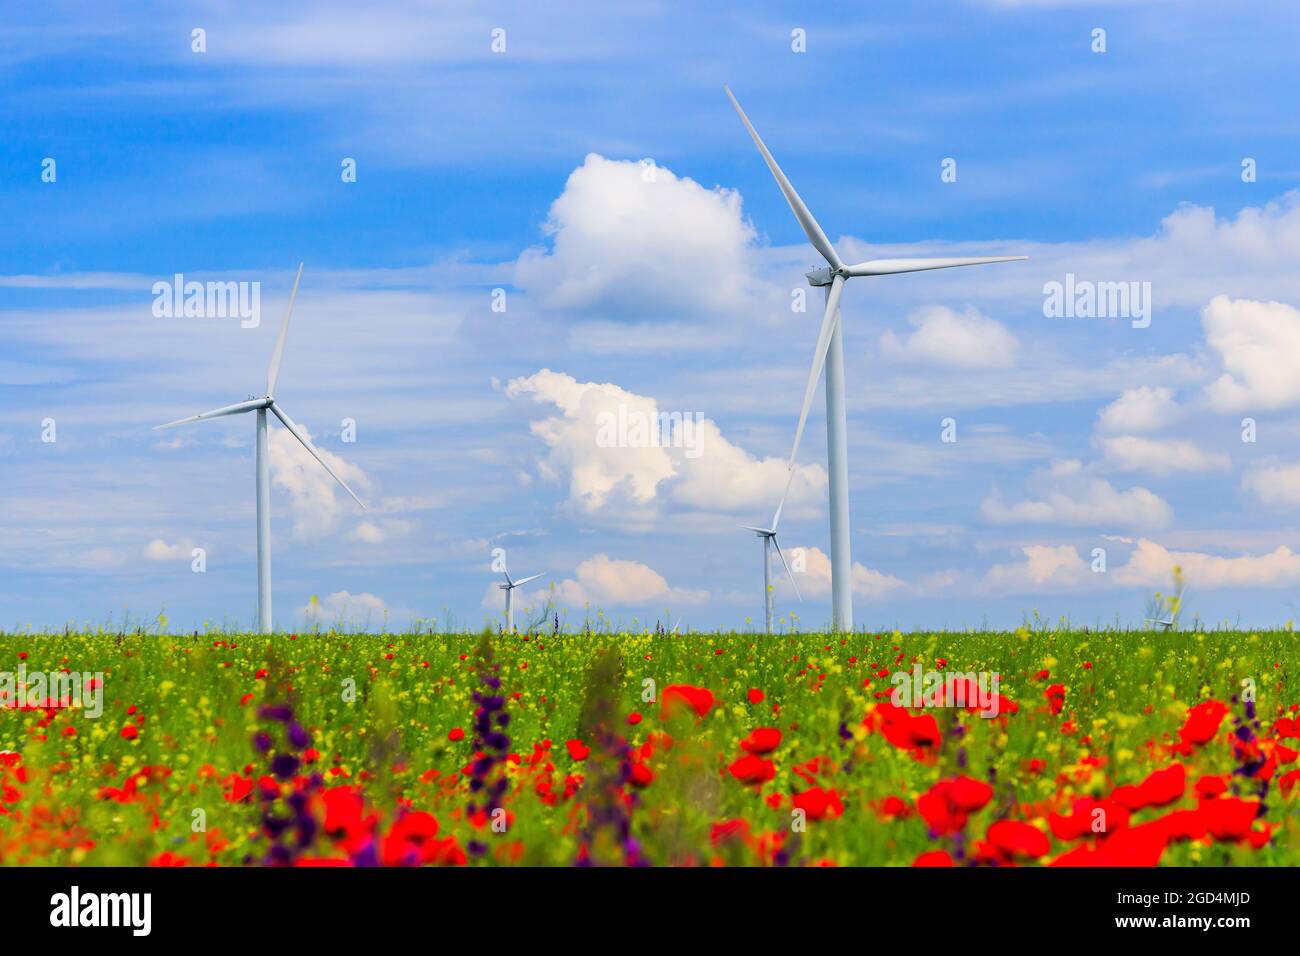 Aerogeneradores (fuente de energía renovable) con campo agrícola y flores silvestres en primer plano. Foto de stock